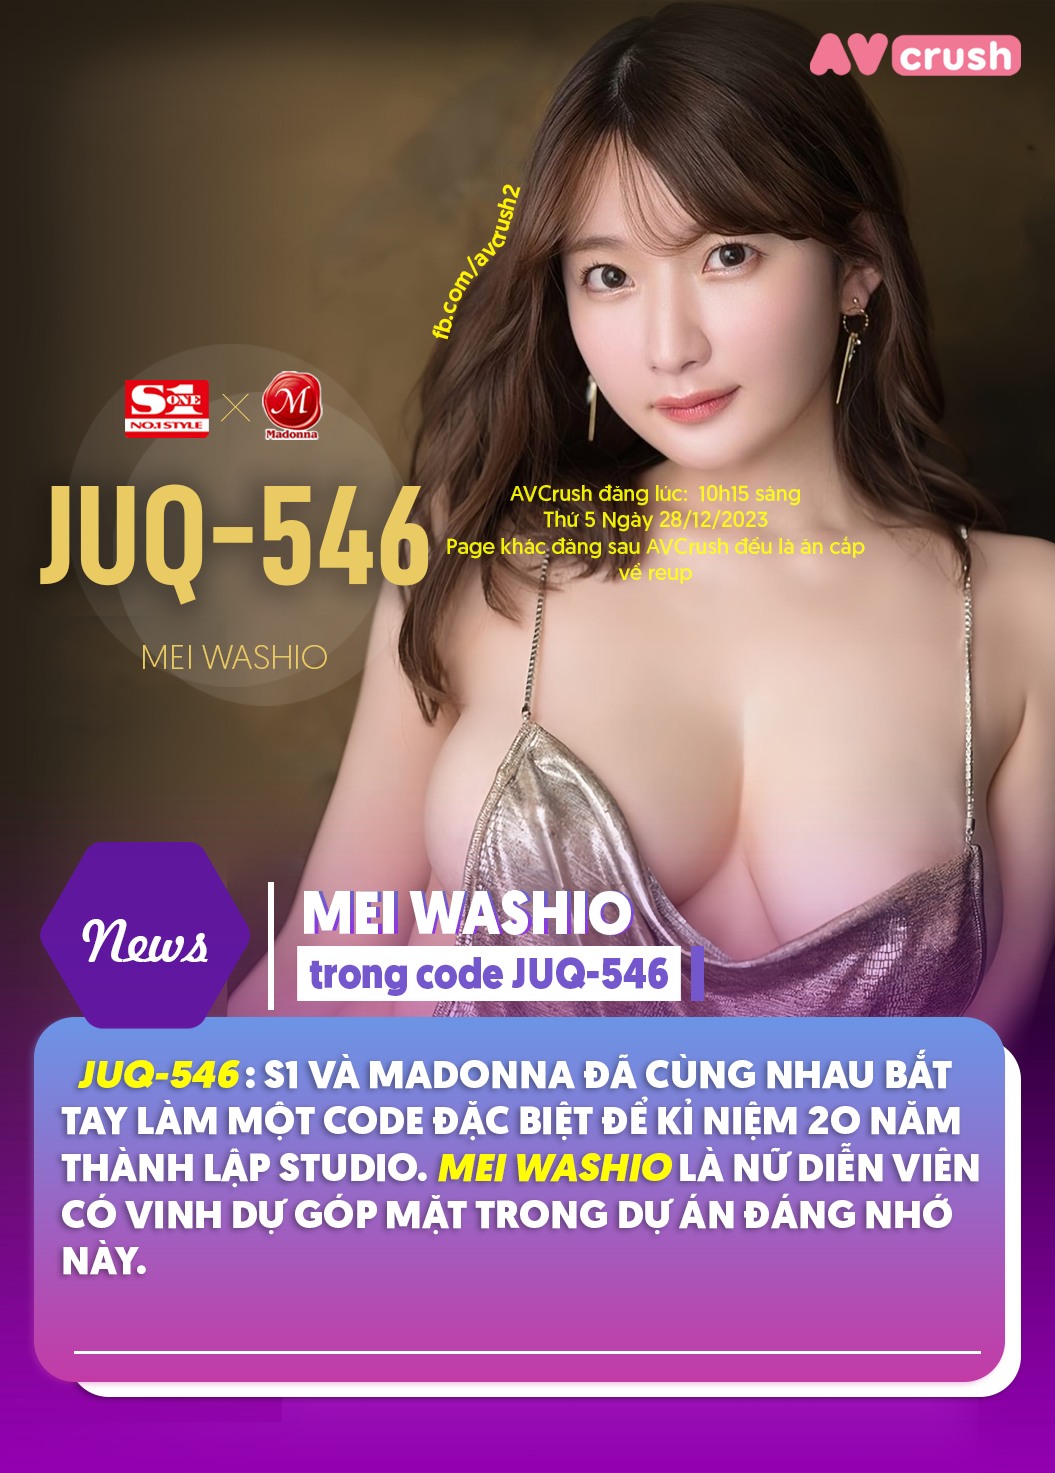 CÓ THỂ BẠN KHÔNG BIẾT>  Bộ phim tiếp theo của Mei Washio sẽ có mã code là JUQ-546